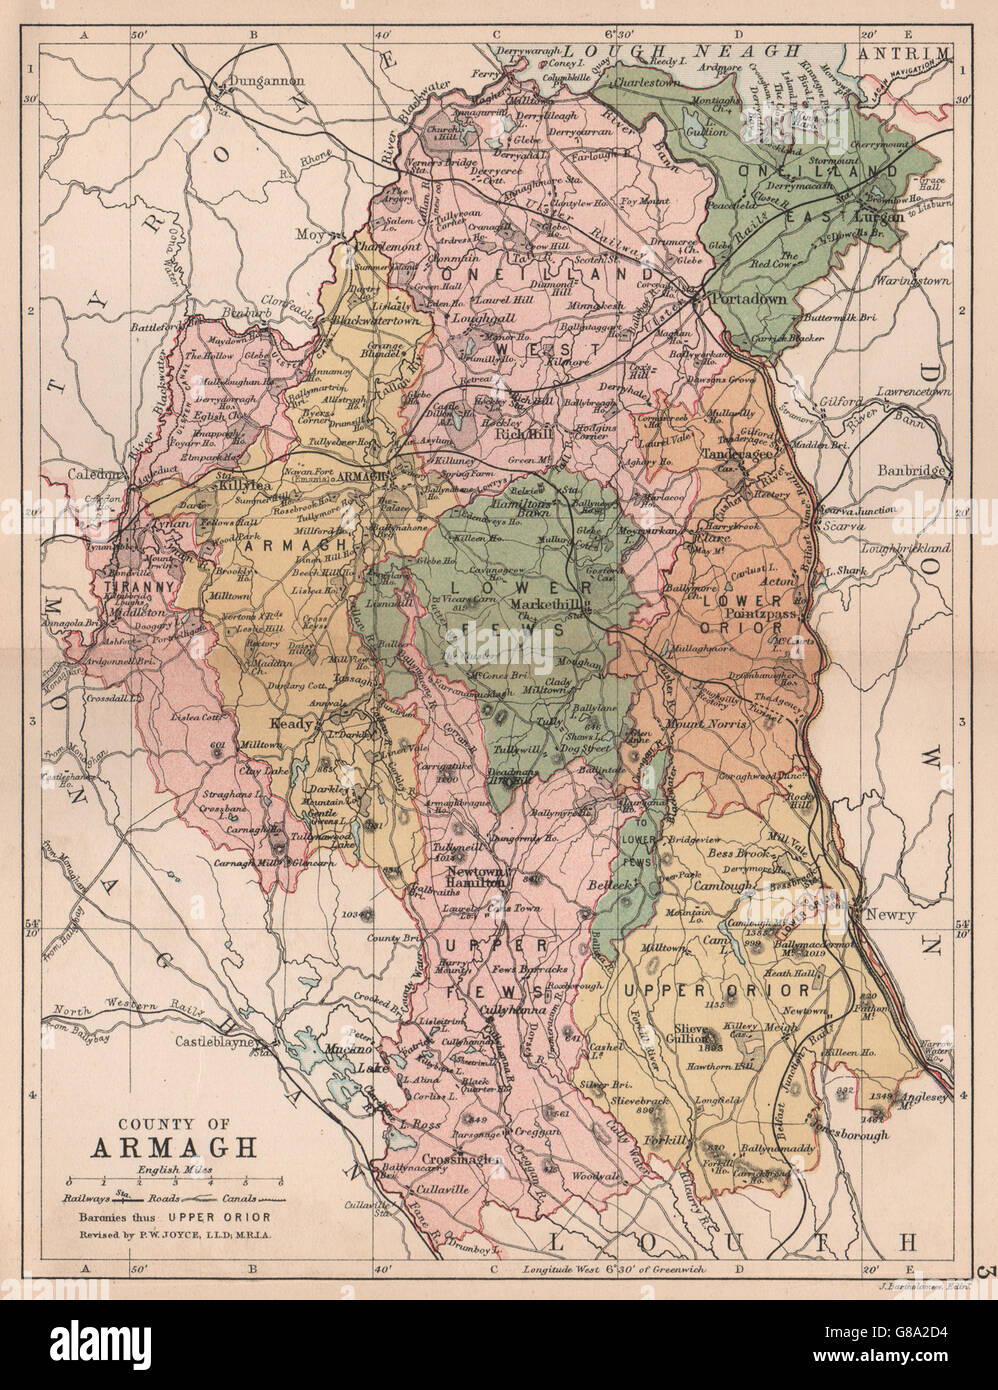 ARMAGH COUNTY : carte du comté d'antiquités. Ulster Portadown. N.L'Irlande. BARTHOLOMEW 1882 Banque D'Images